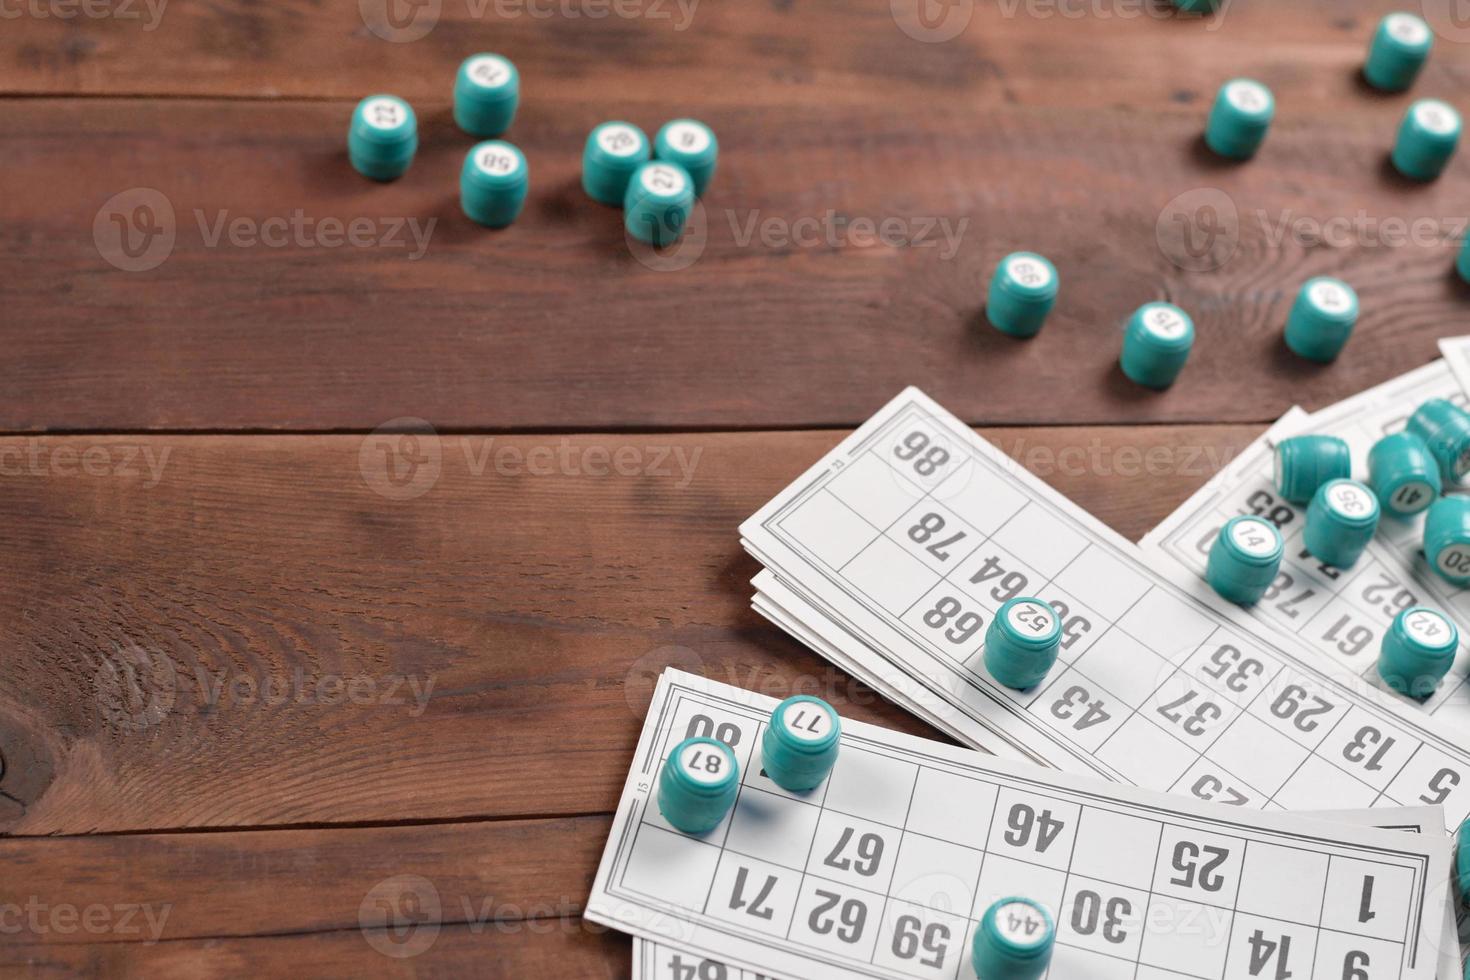 många fat med tal och kort för lotto eller ryska bingo tabell spel på trä- yta. ryska lotto har liknande regler till klassisk över hela världen bingo foto